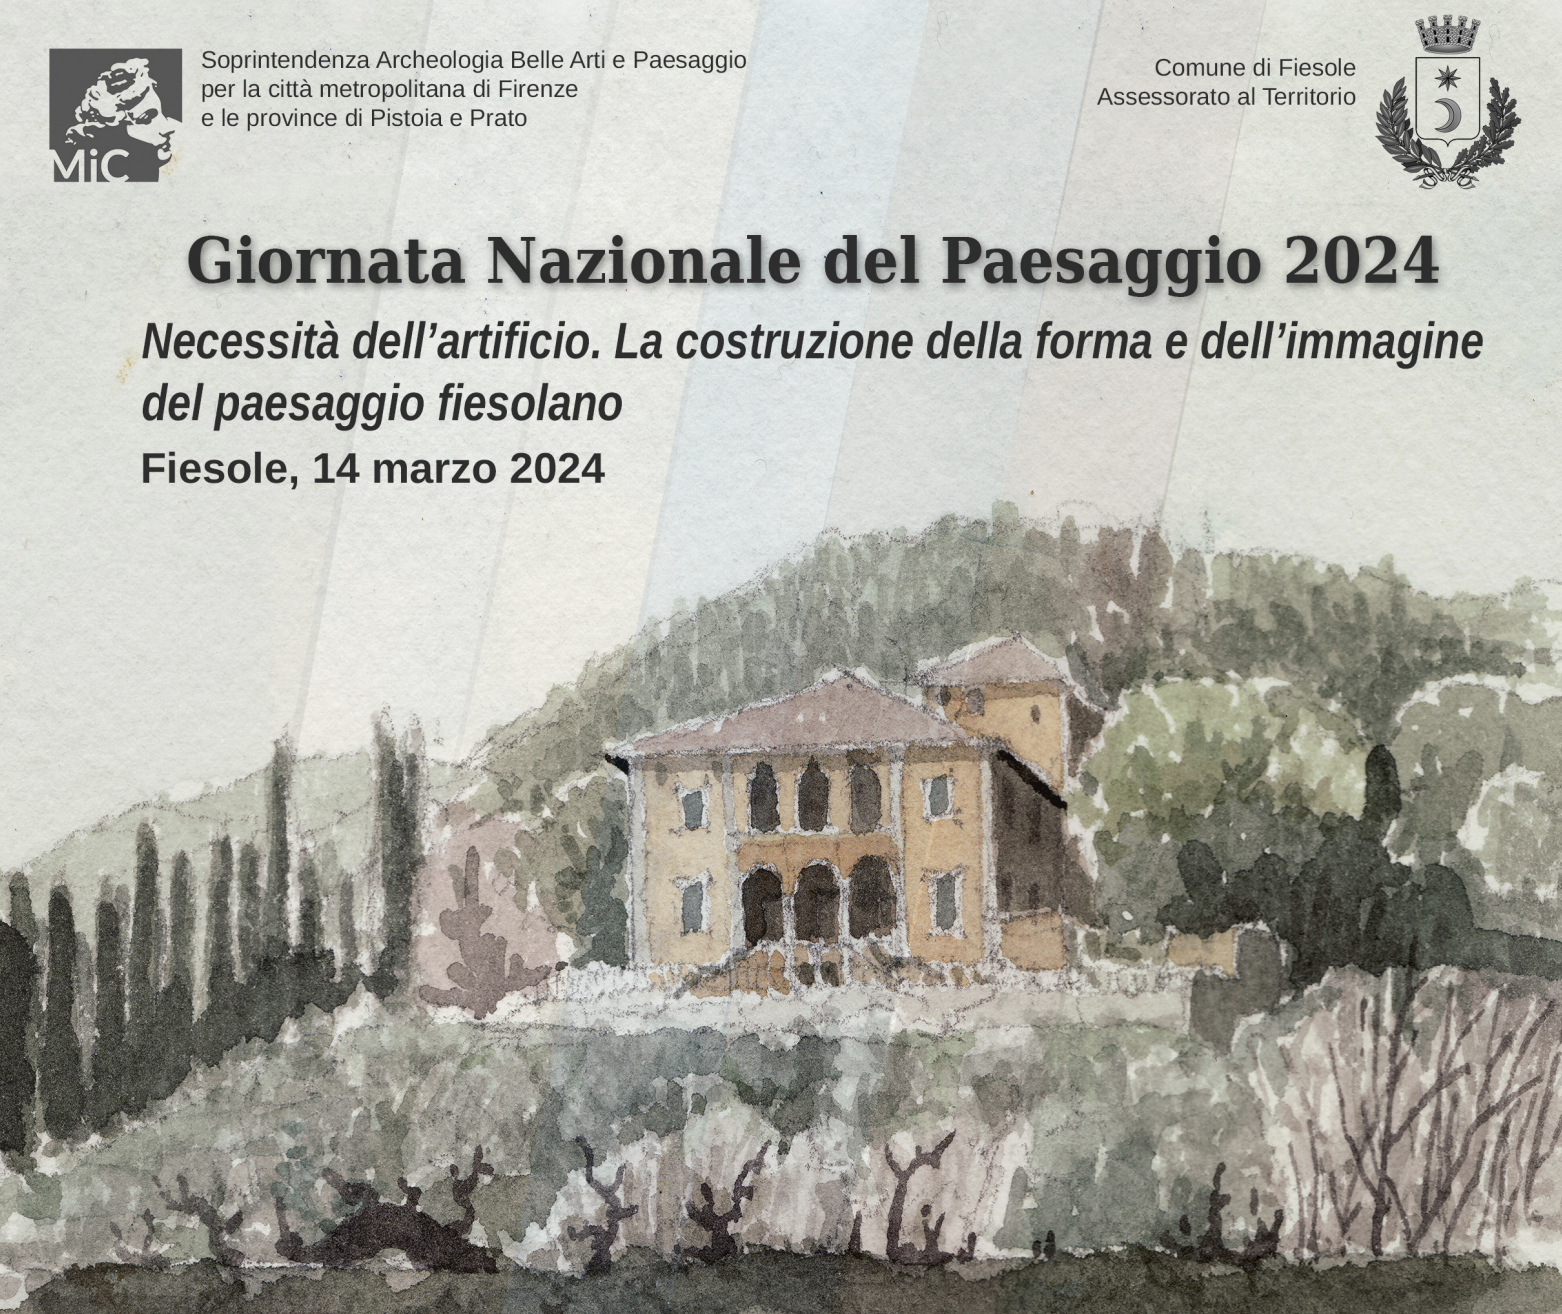 Giornata nazionale del paesaggio, le iniziative in Toscana